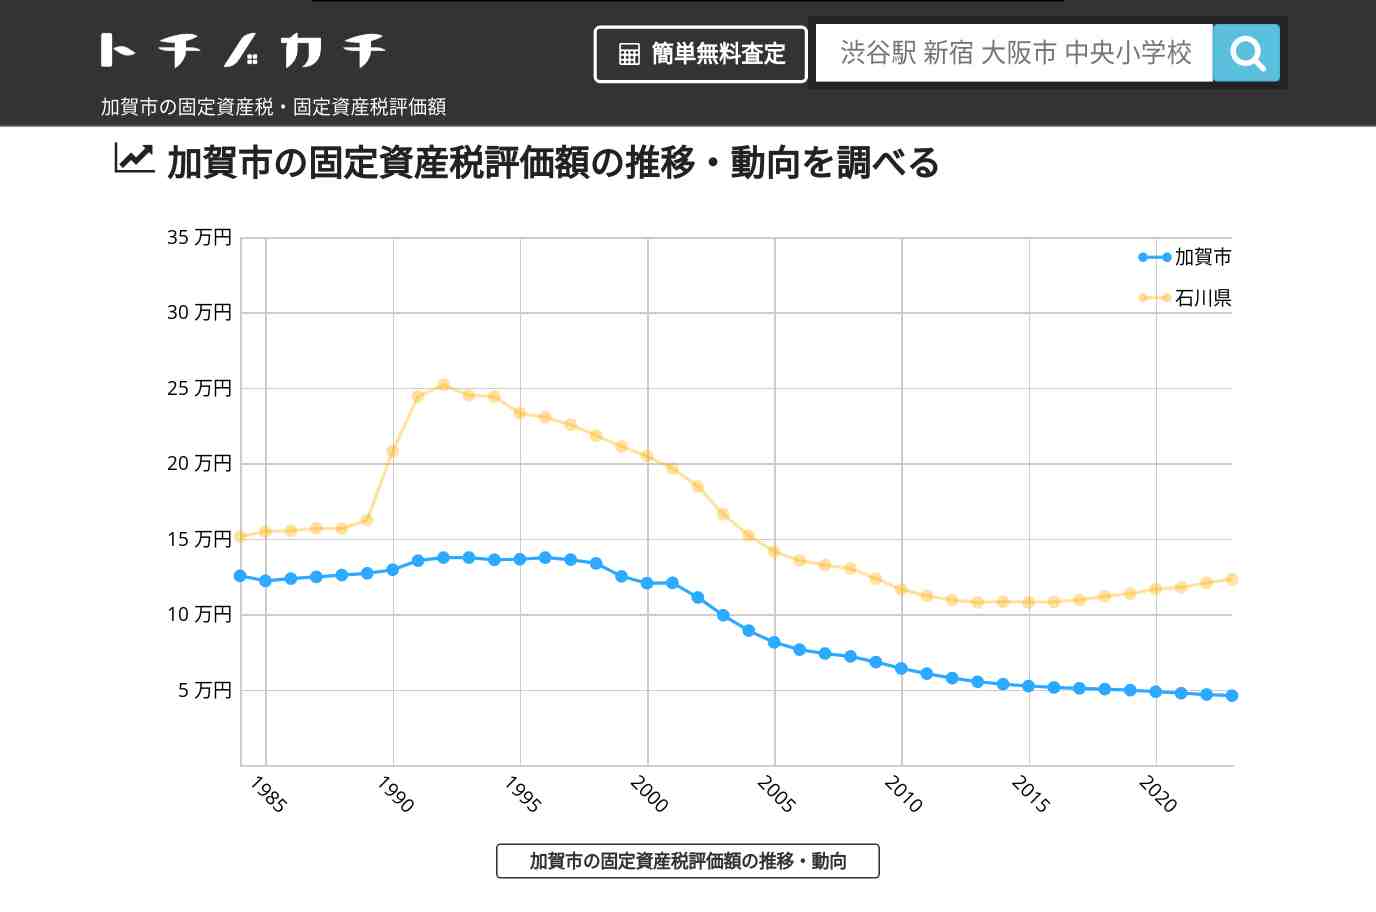 橋立中学校(石川県 加賀市)周辺の固定資産税・固定資産税評価額 | トチノカチ